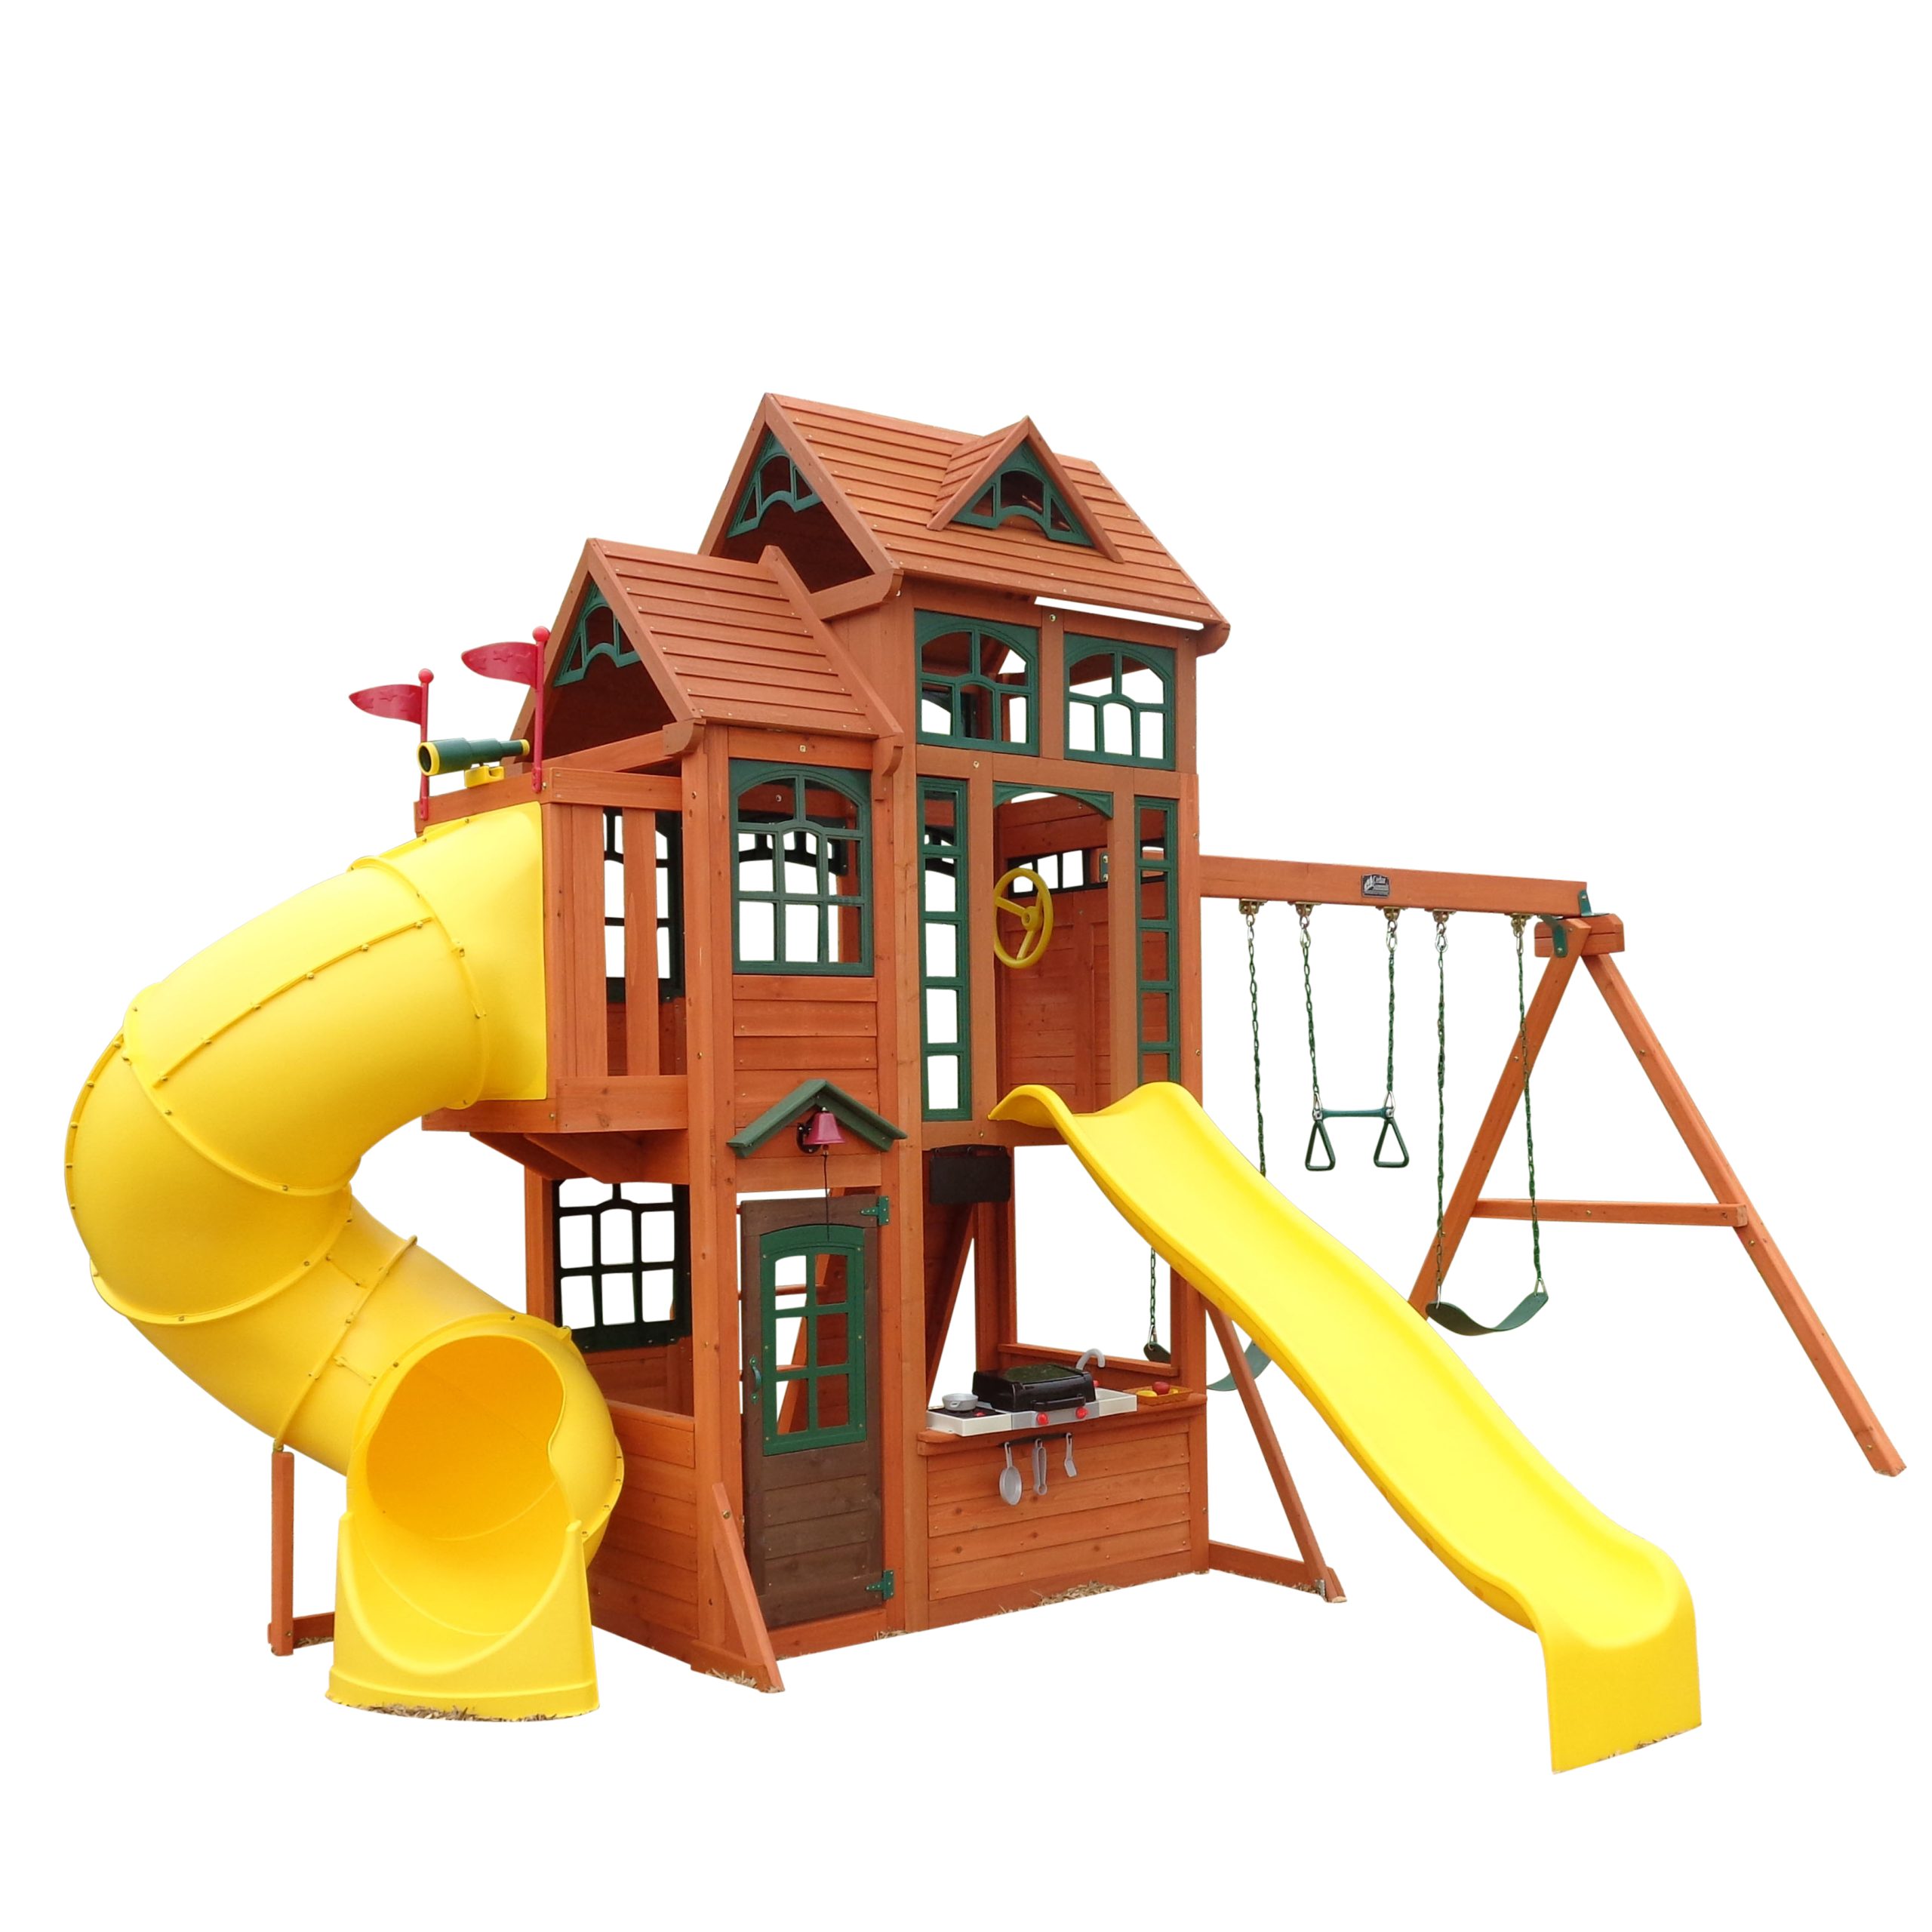 Kidkraft Kidkraft Canyon Ridge Wooden PlaysetKids Wooden Play House Swing Slide Set 875257003902 